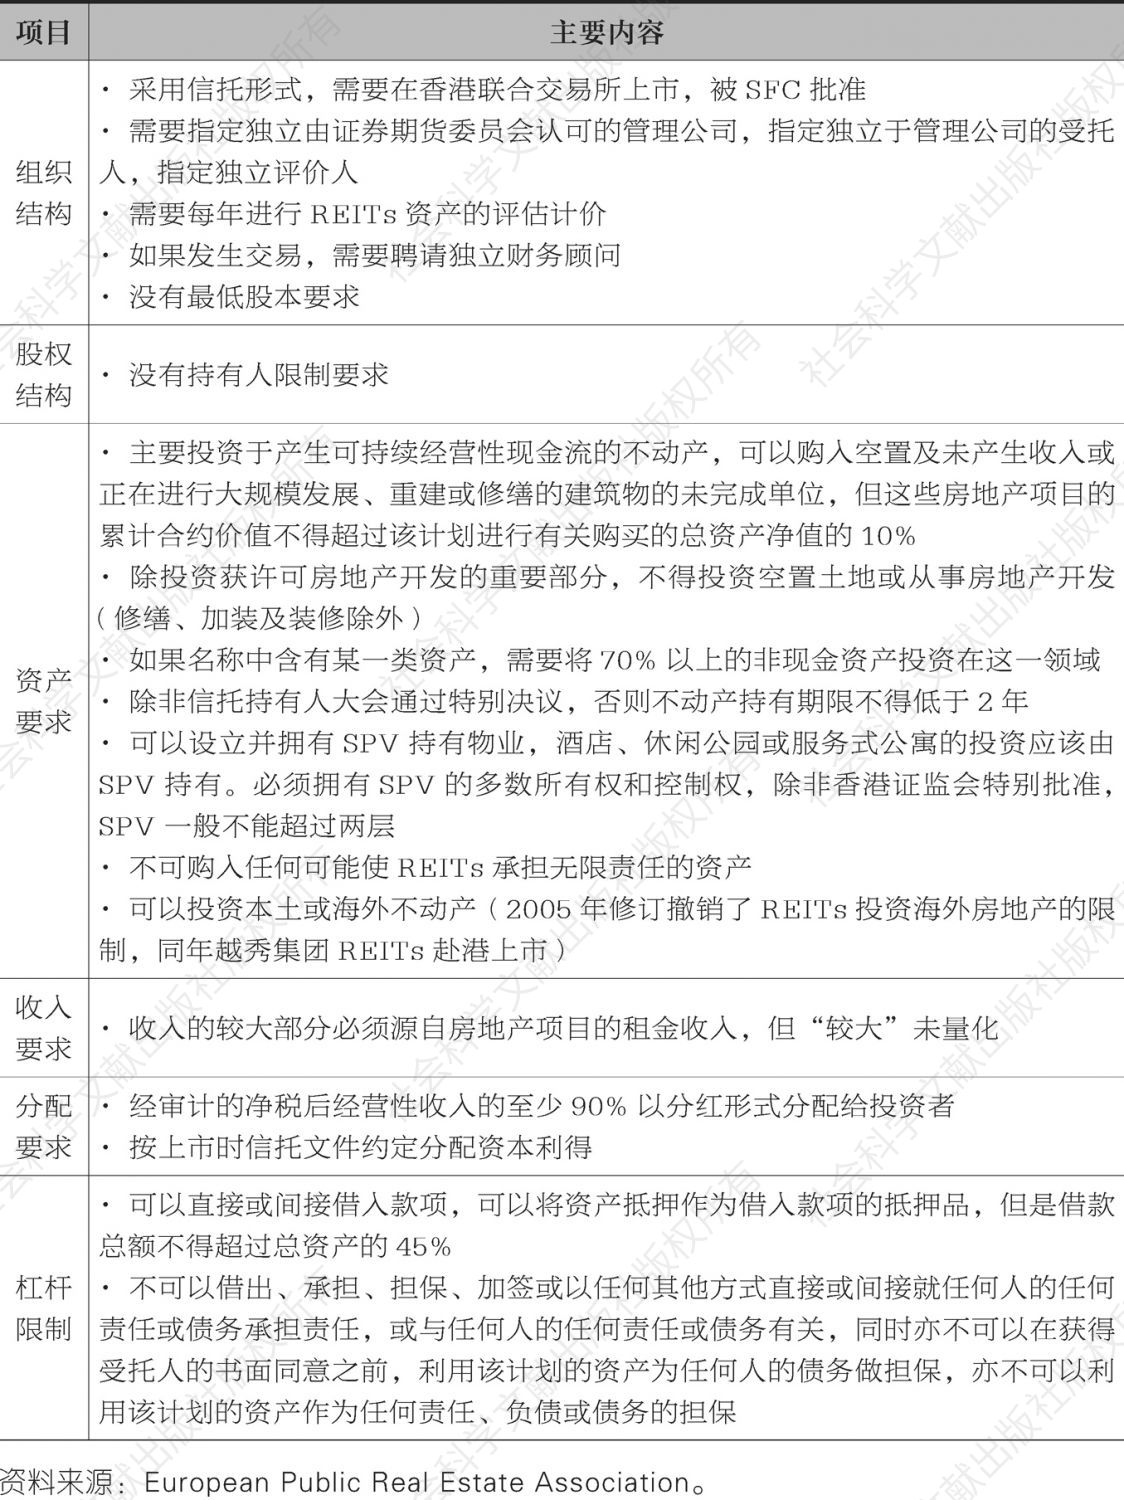 表11-10 香港REITs制度架构核心内容